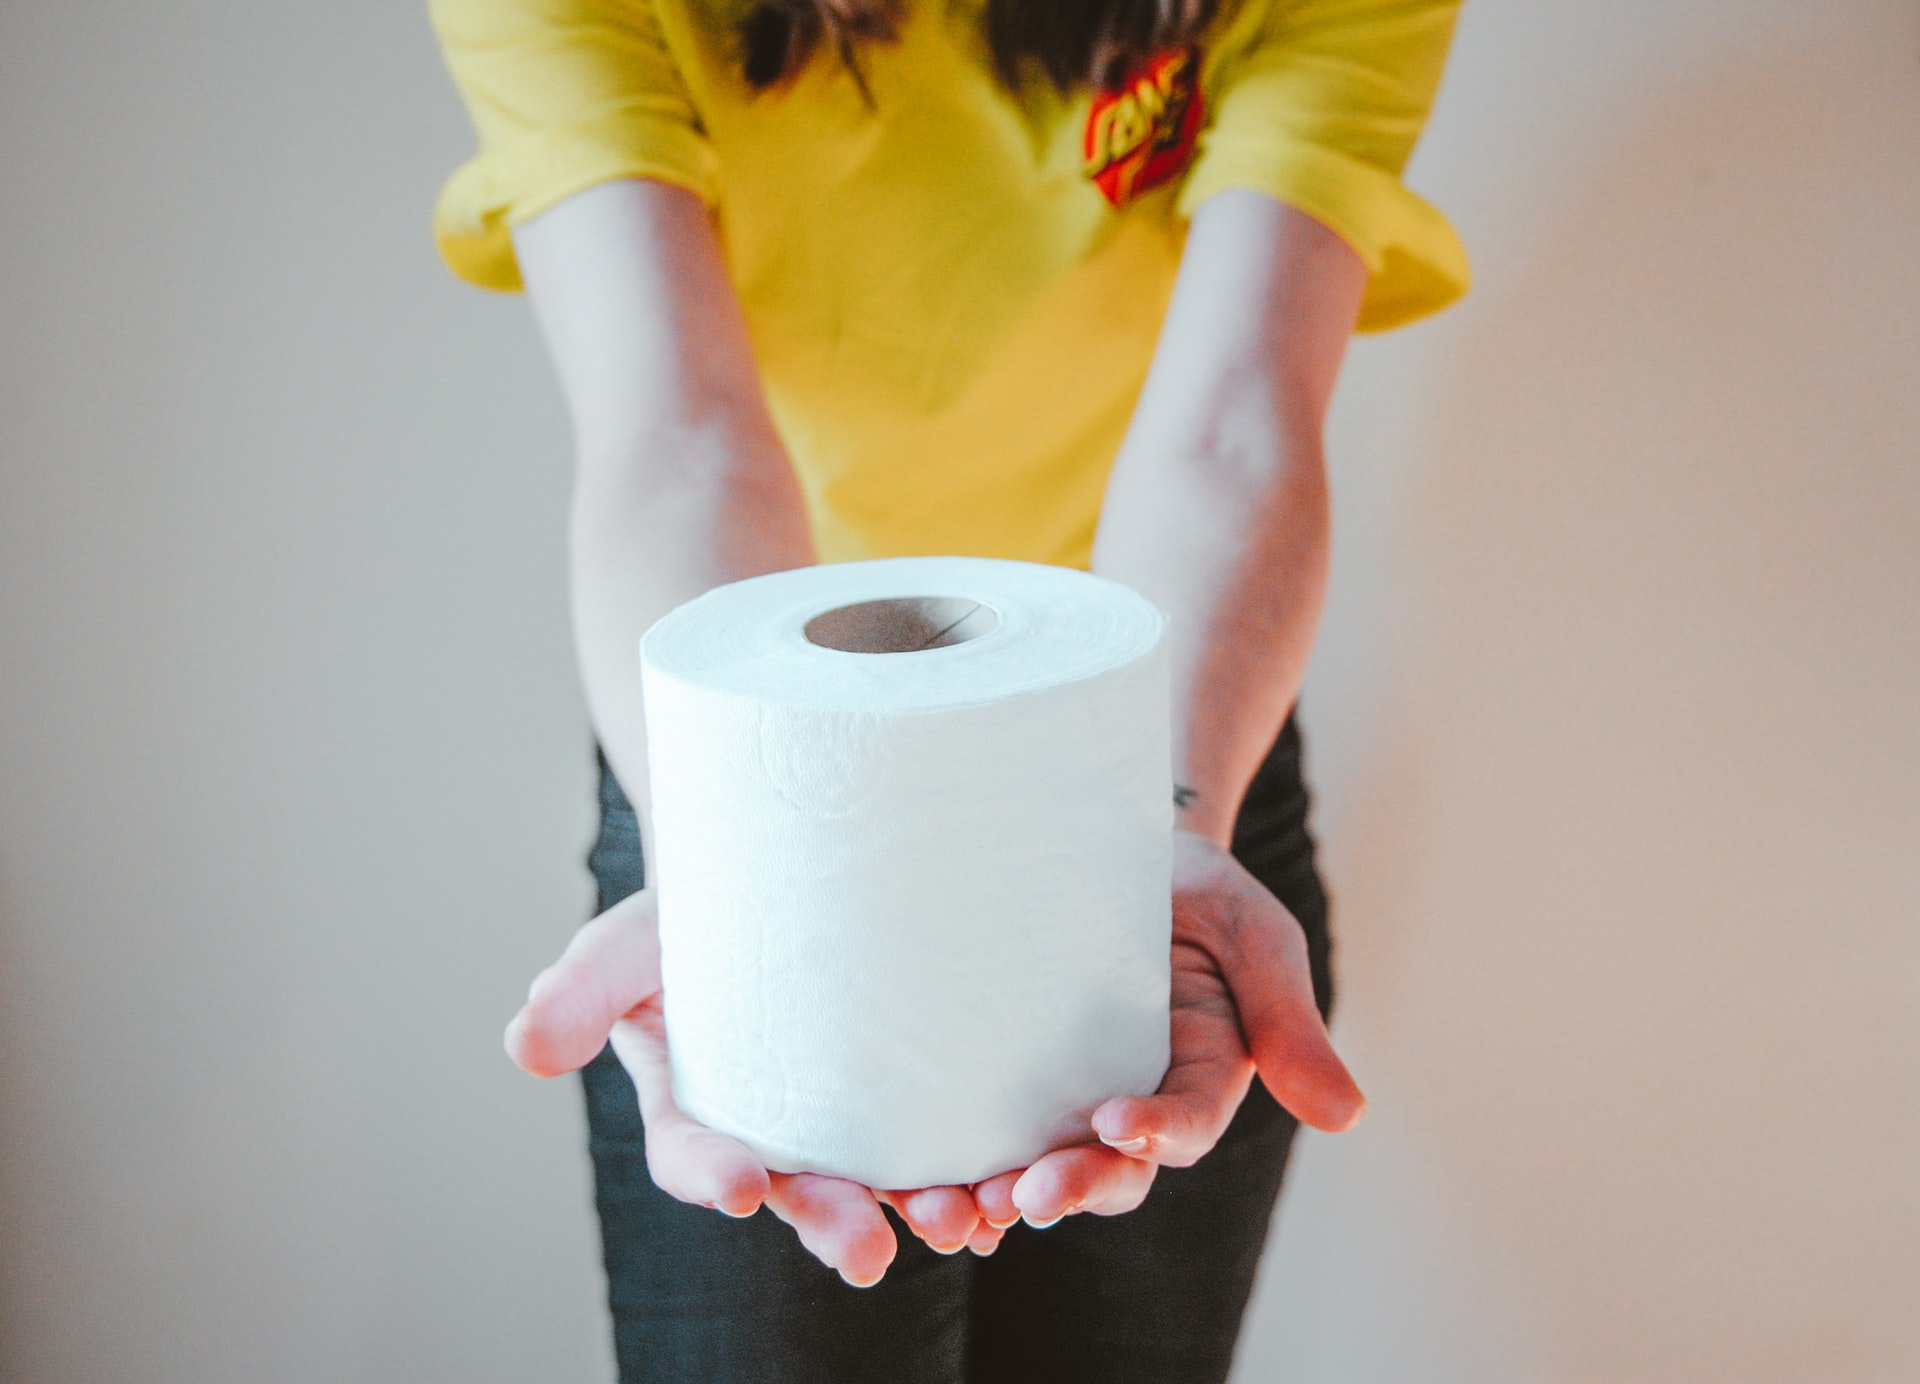 Eine Frau hält eine Rolle Toilettenpapier